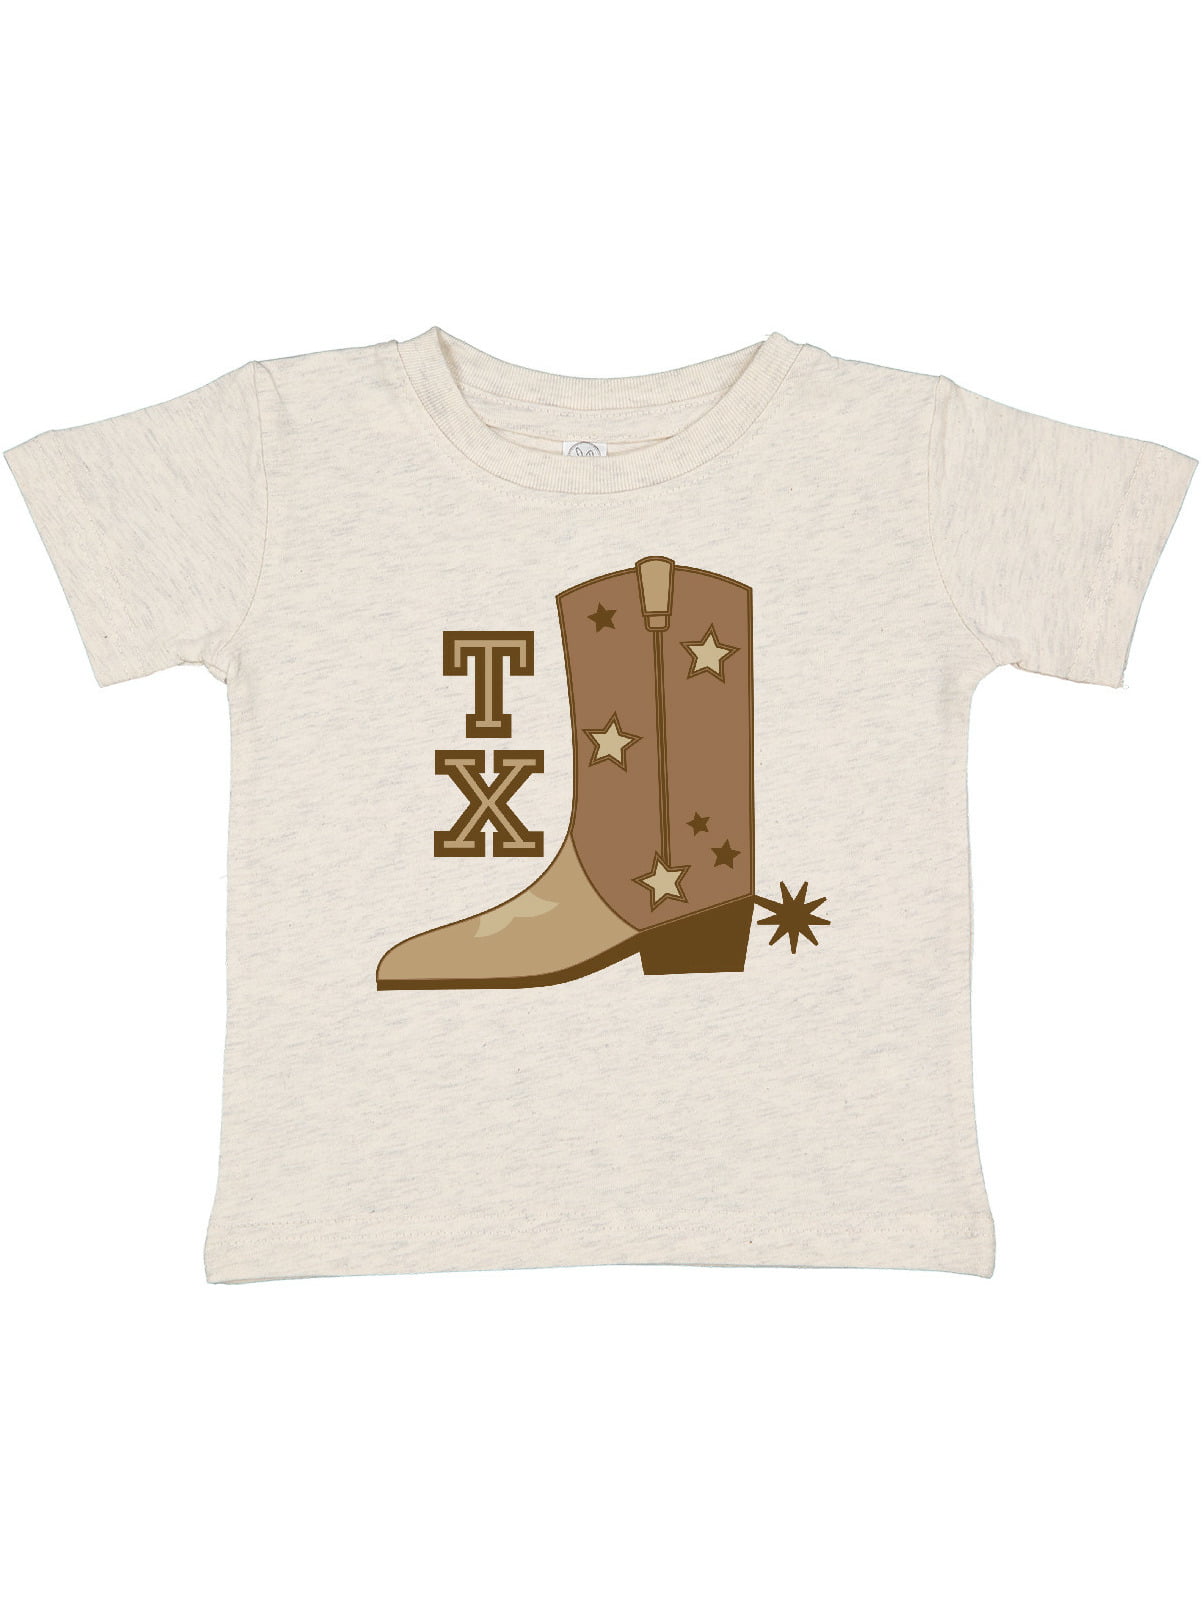 Unisex Infant T-Shirt Dallas Texas Cowboy Boots